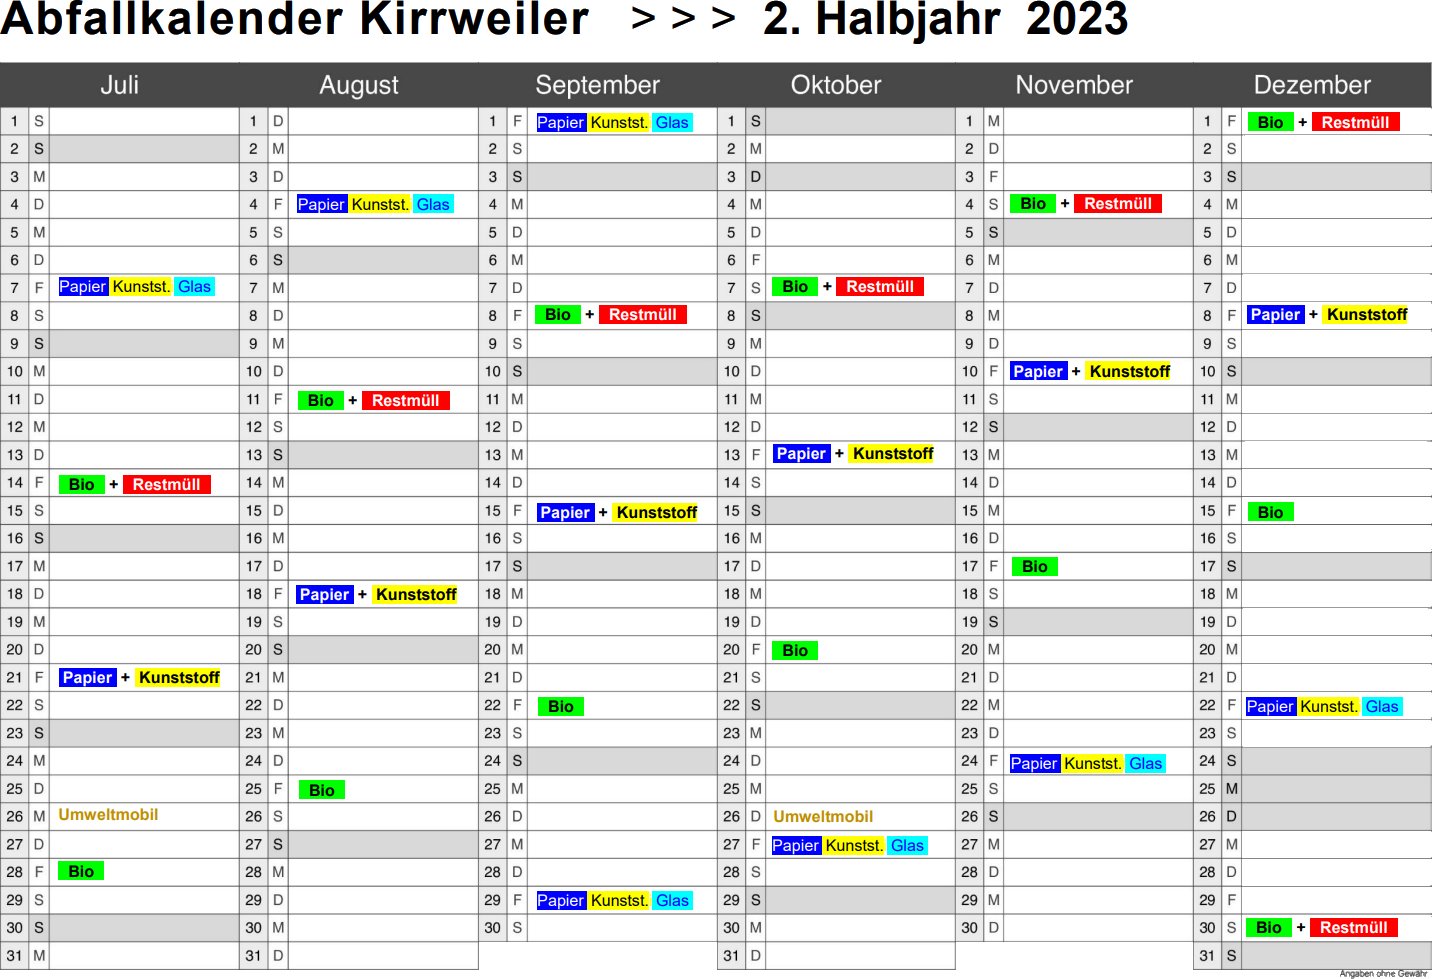 Ablage/Abfallkalender_Kirrweiler_2-Halbjahr_2023.pdf